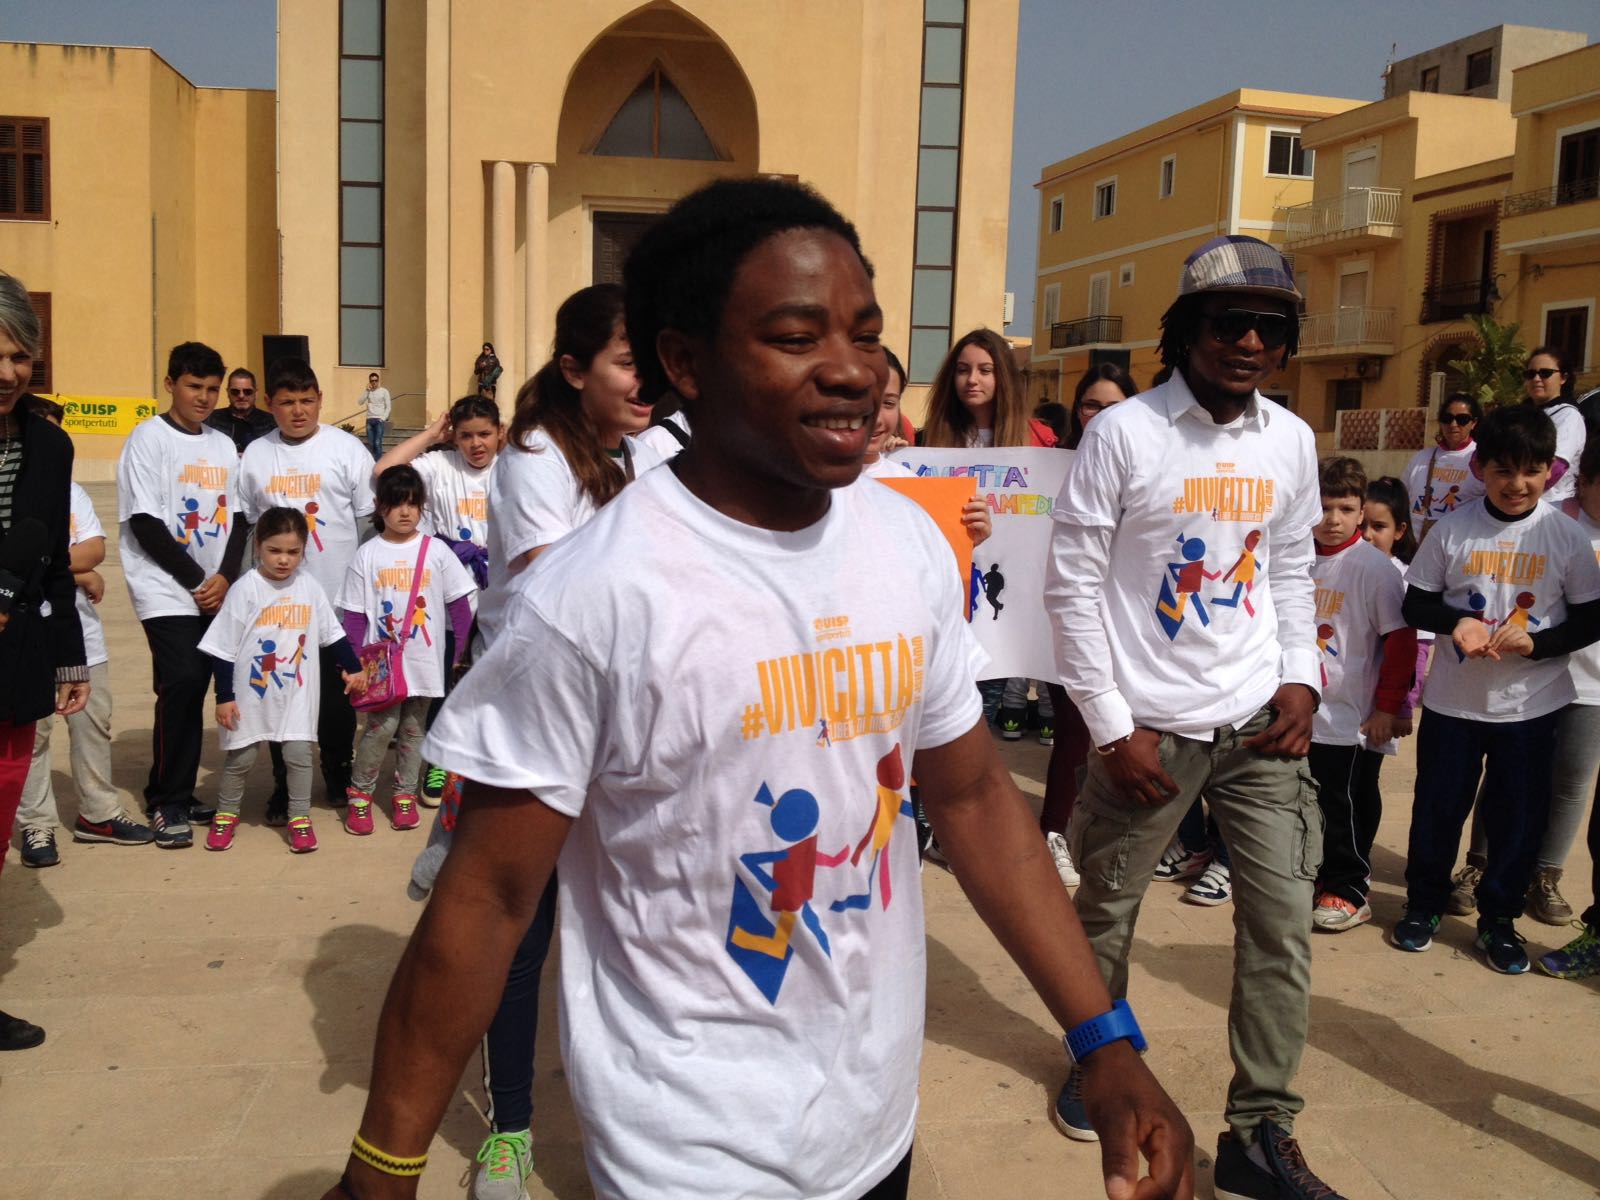 Da Lampedusa a Brescia: con Vivicittà l’Italia si dimostra capitale di sport e di accoglienza